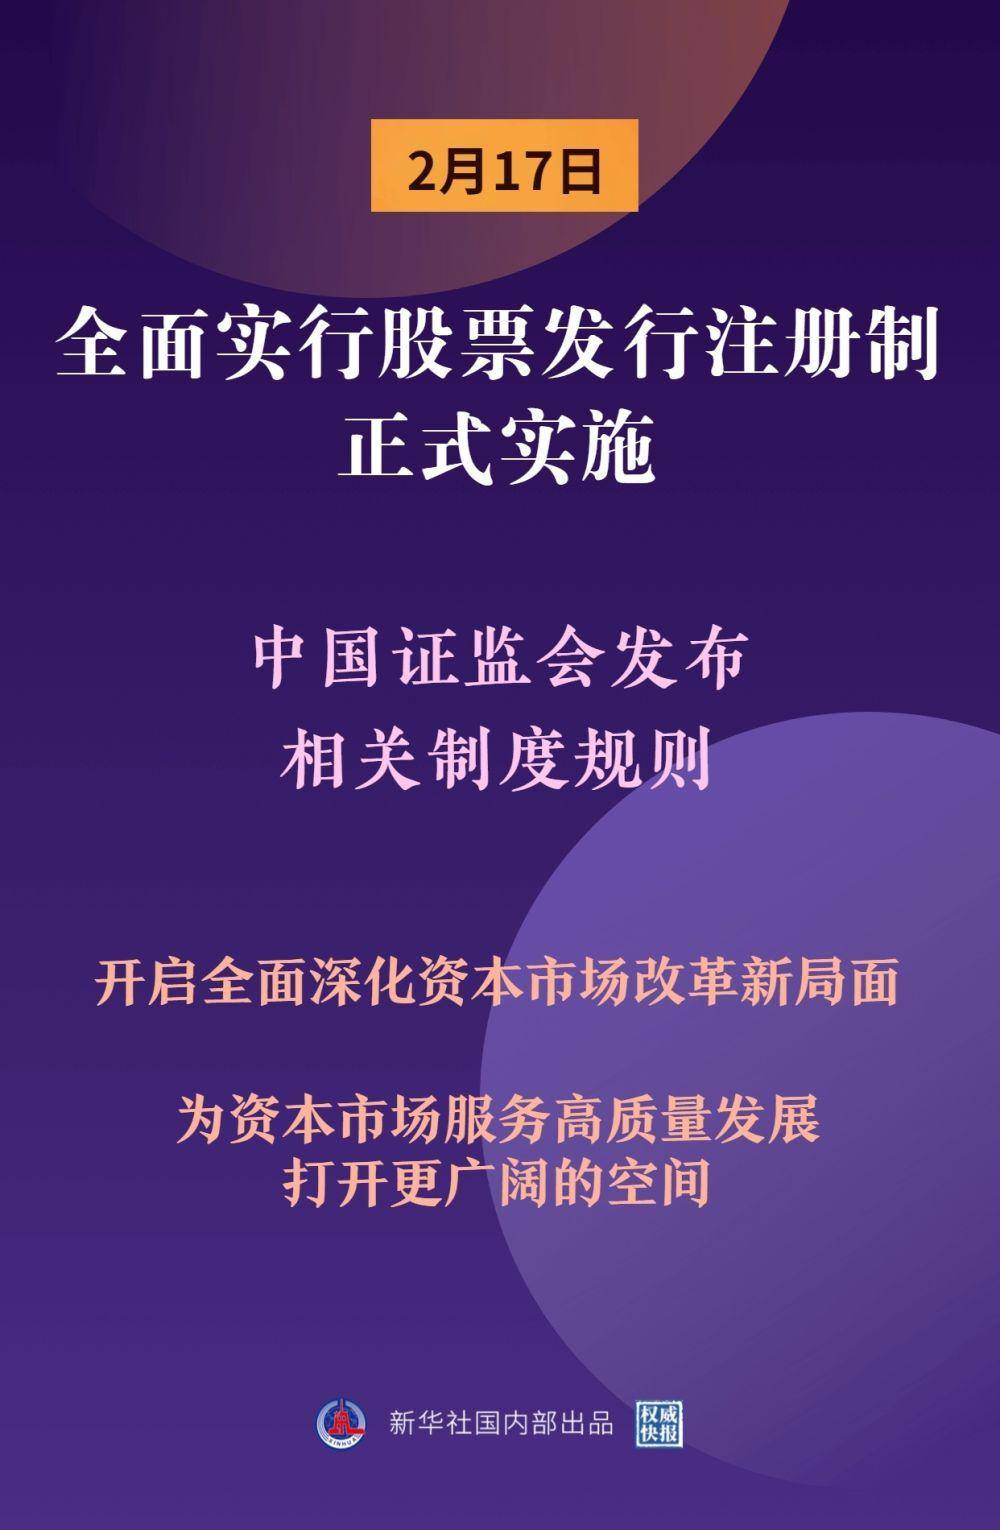 权威快报丨全面实行股票发行注册制正式实施